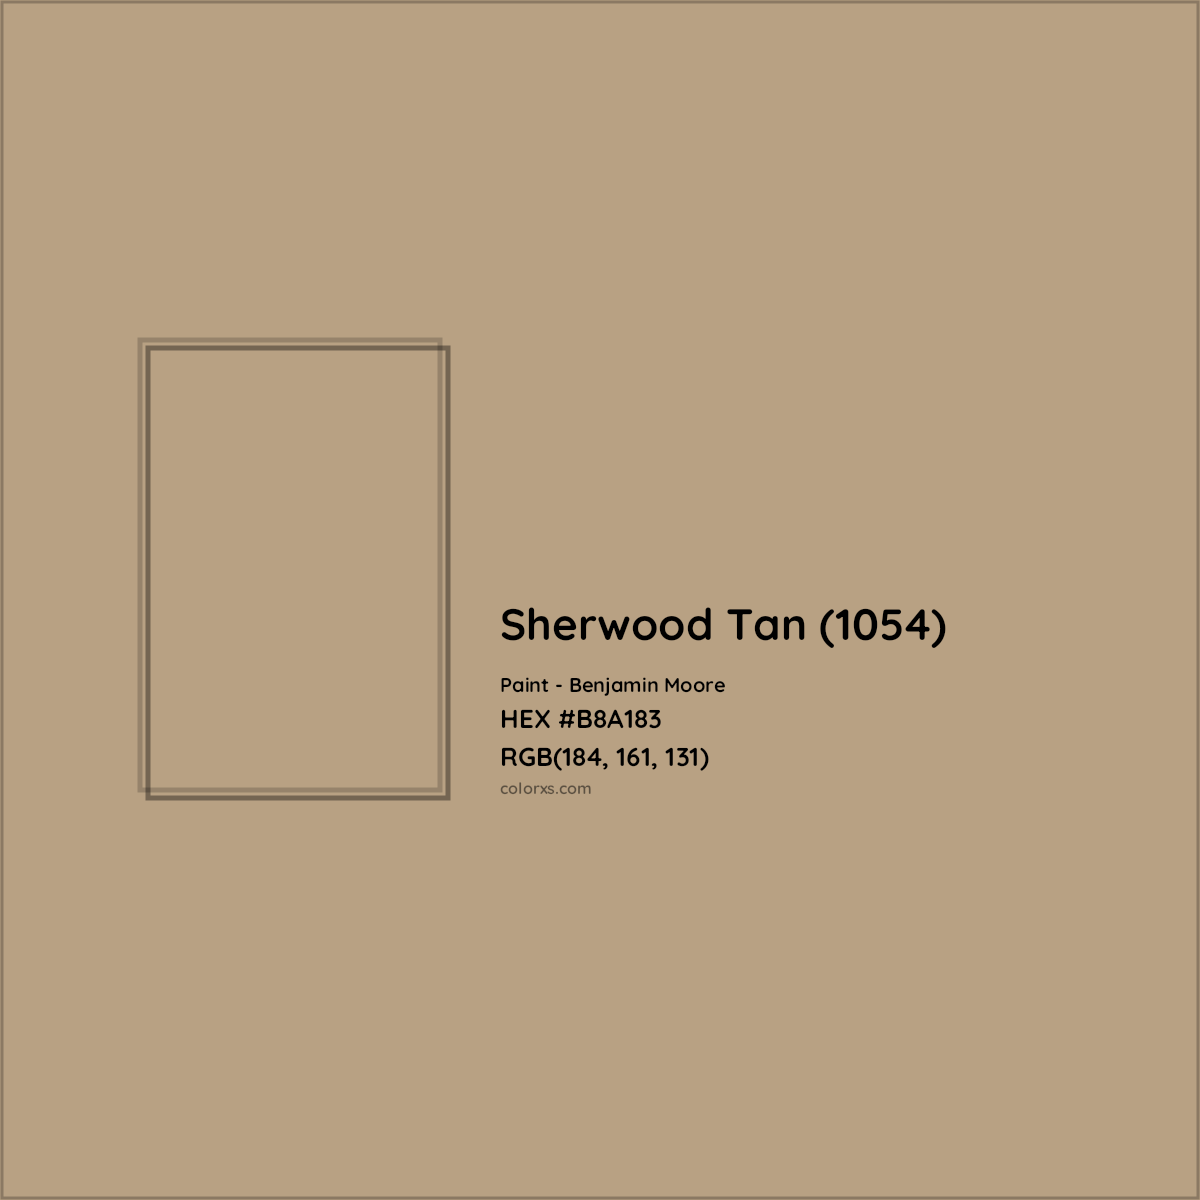 HEX #B8A183 Sherwood Tan (1054) Paint Benjamin Moore - Color Code